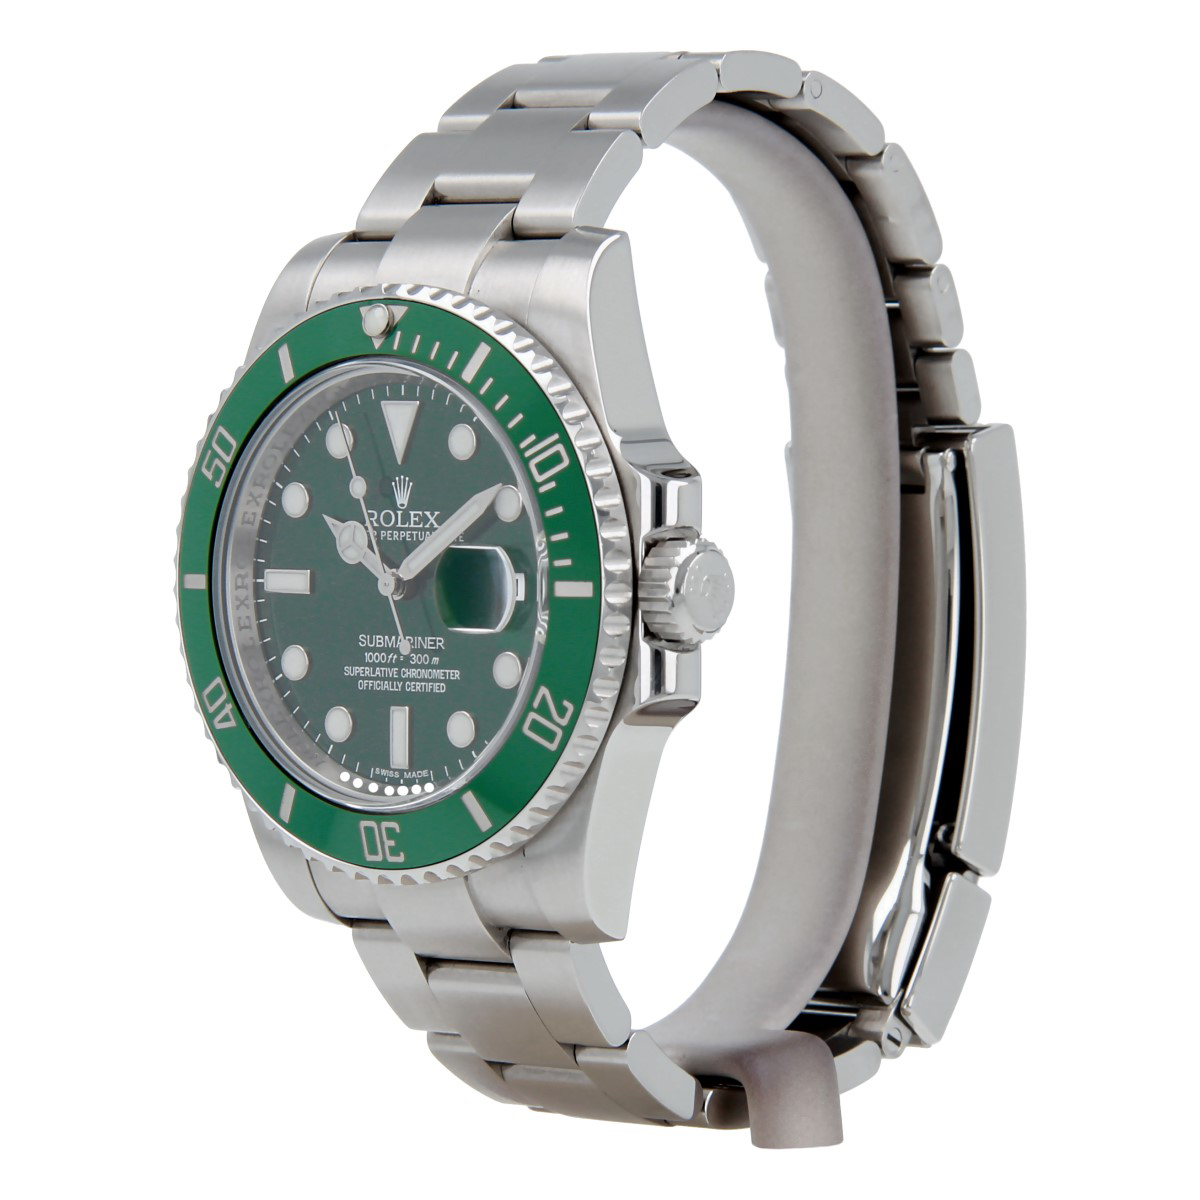 Rolex Submariner Date Hulk Oystersteel Men's Watch 116610LV - Green